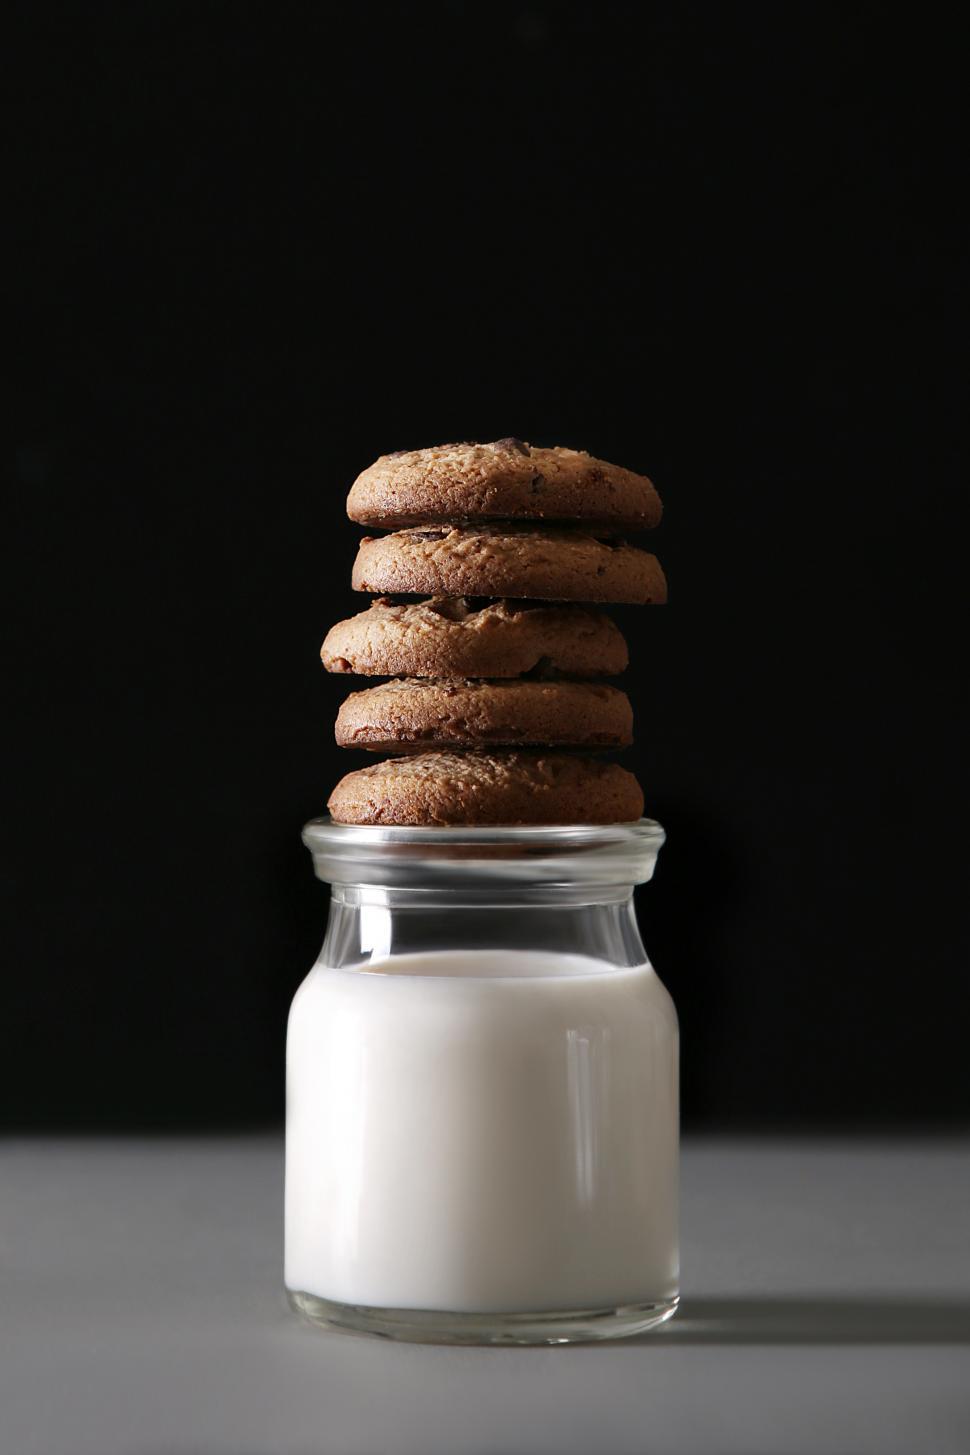 Free Image of Cookies and milk jar 